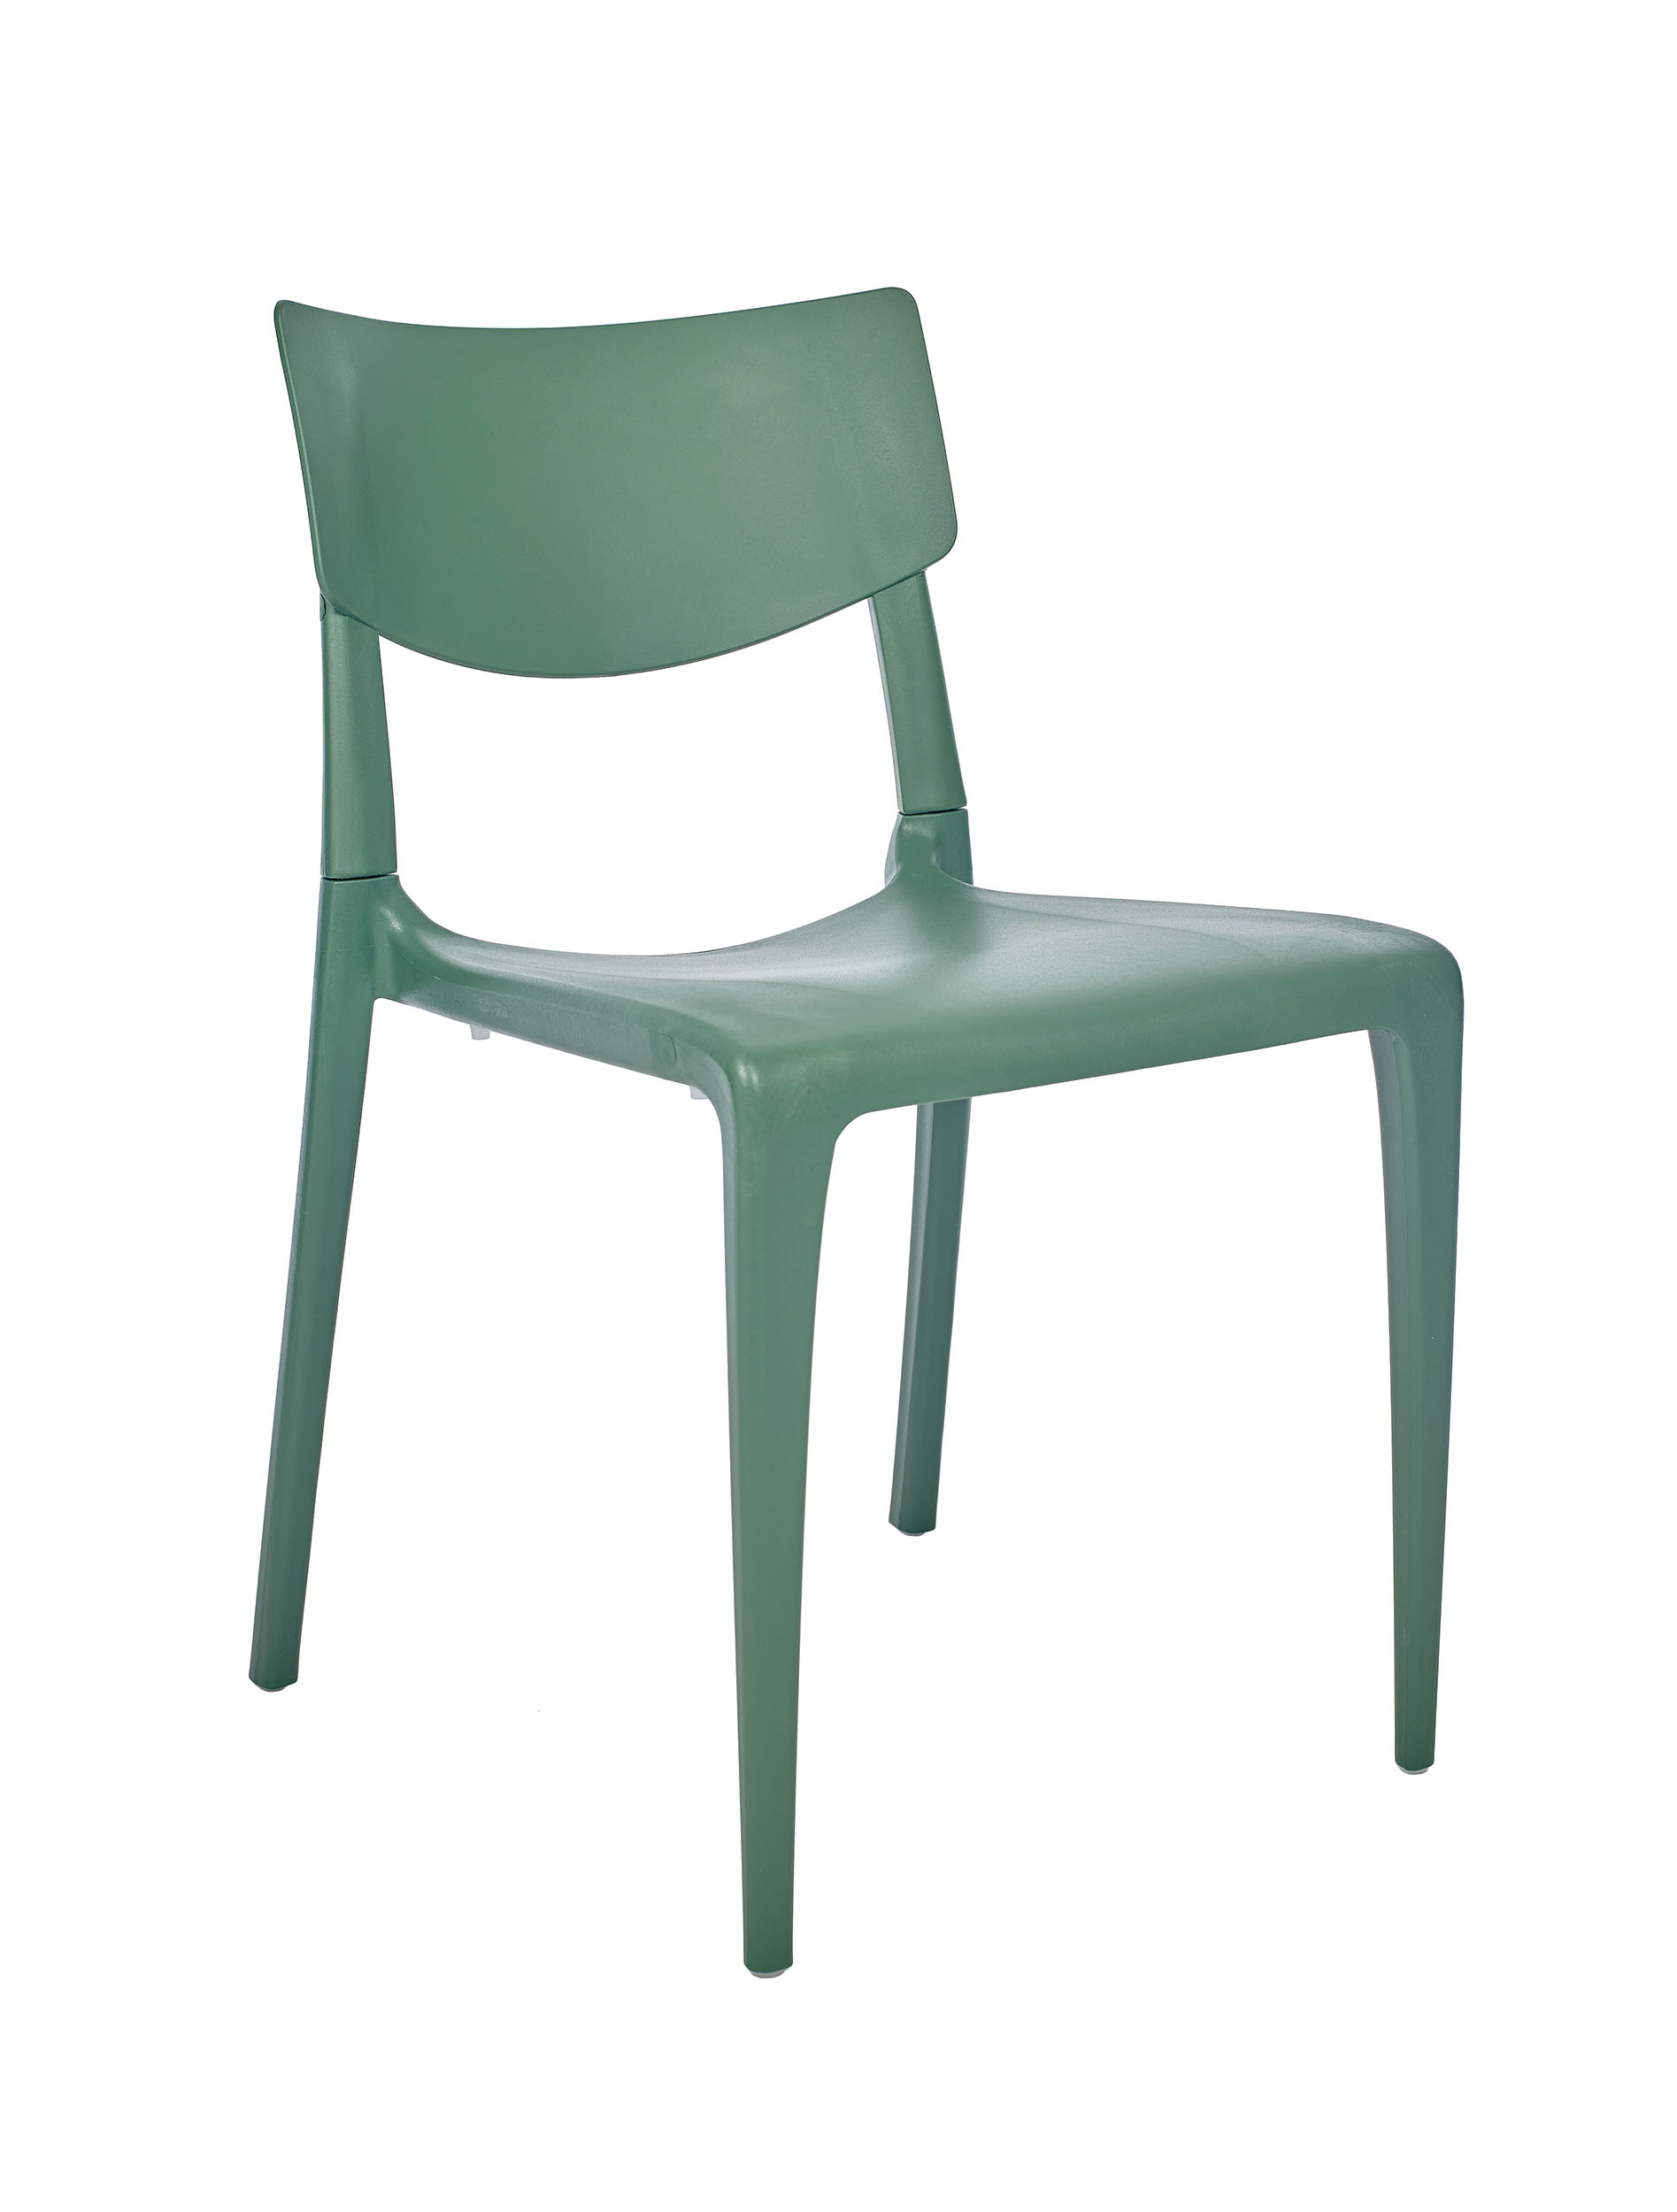 Chaise de jardin empilable en polypropylène renforcé vert